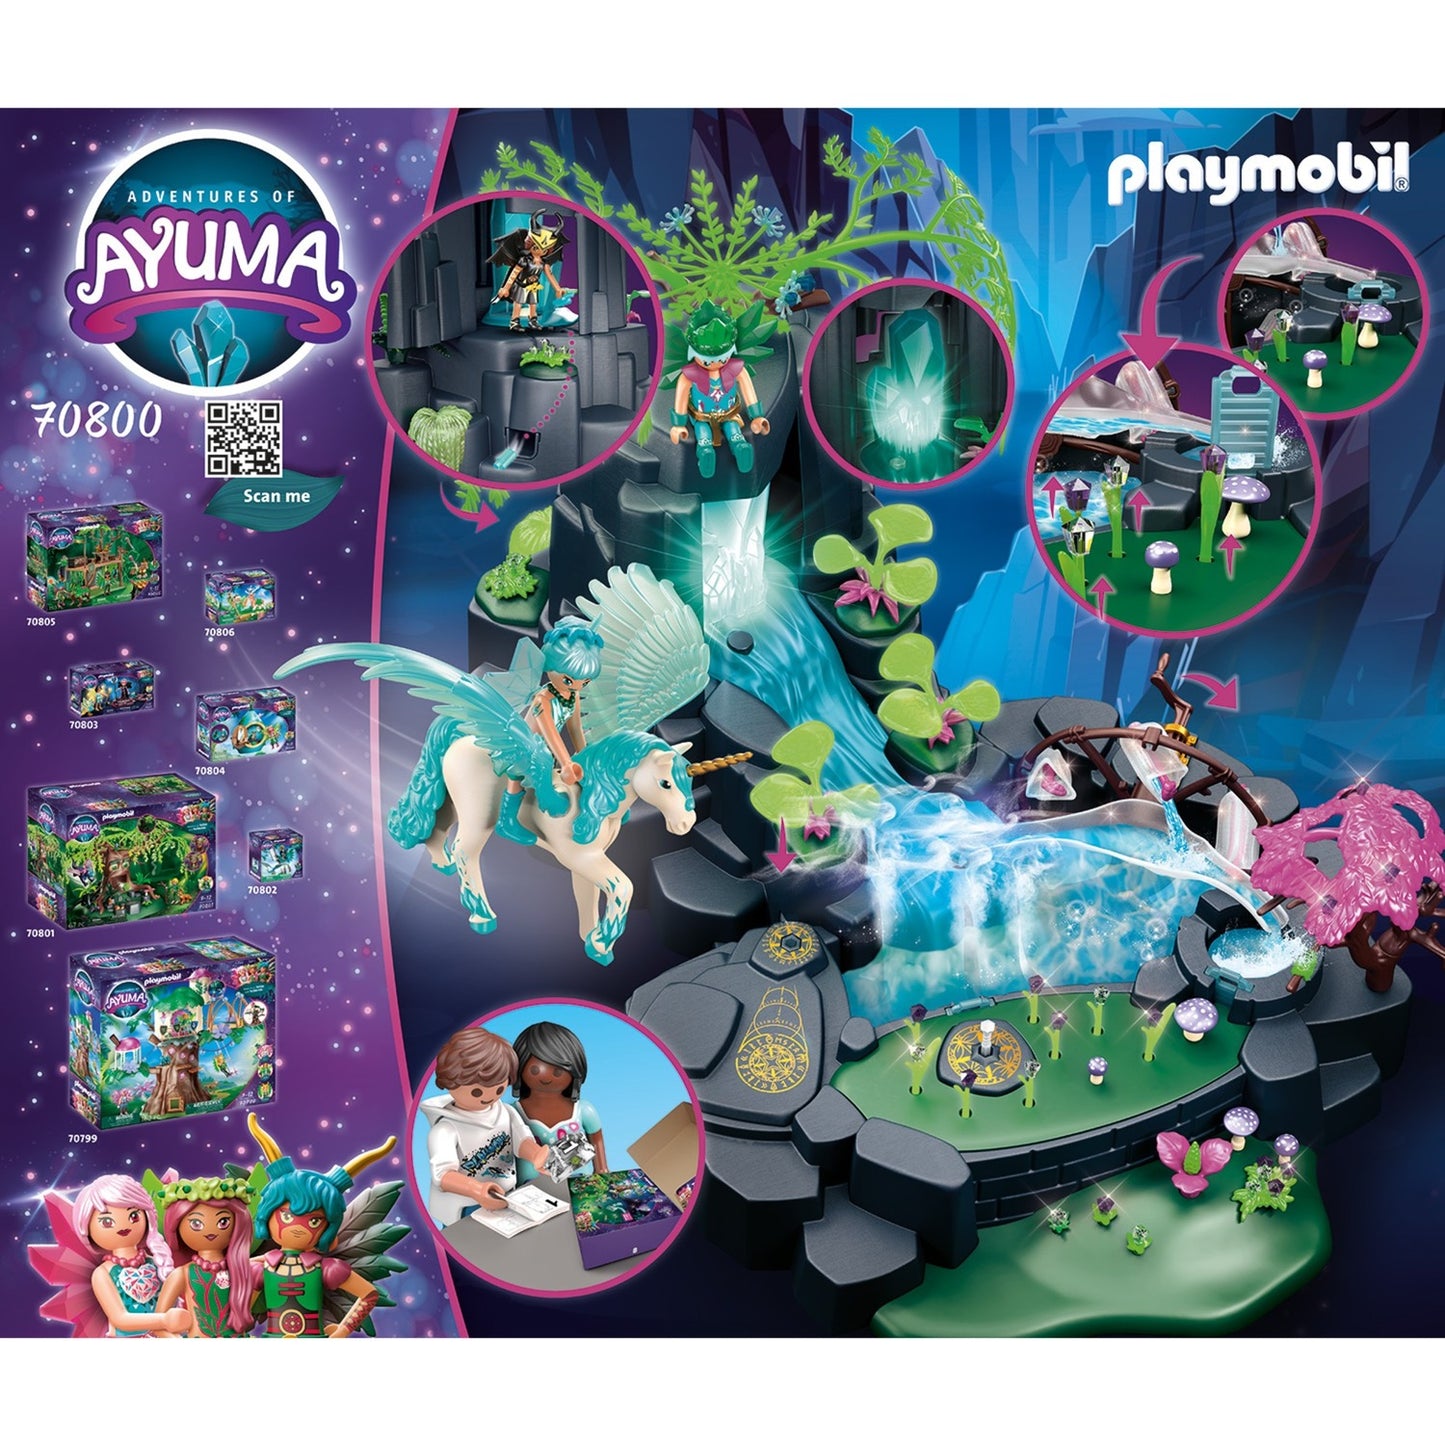 Playmobil Ayuma Magical Energy Fonte